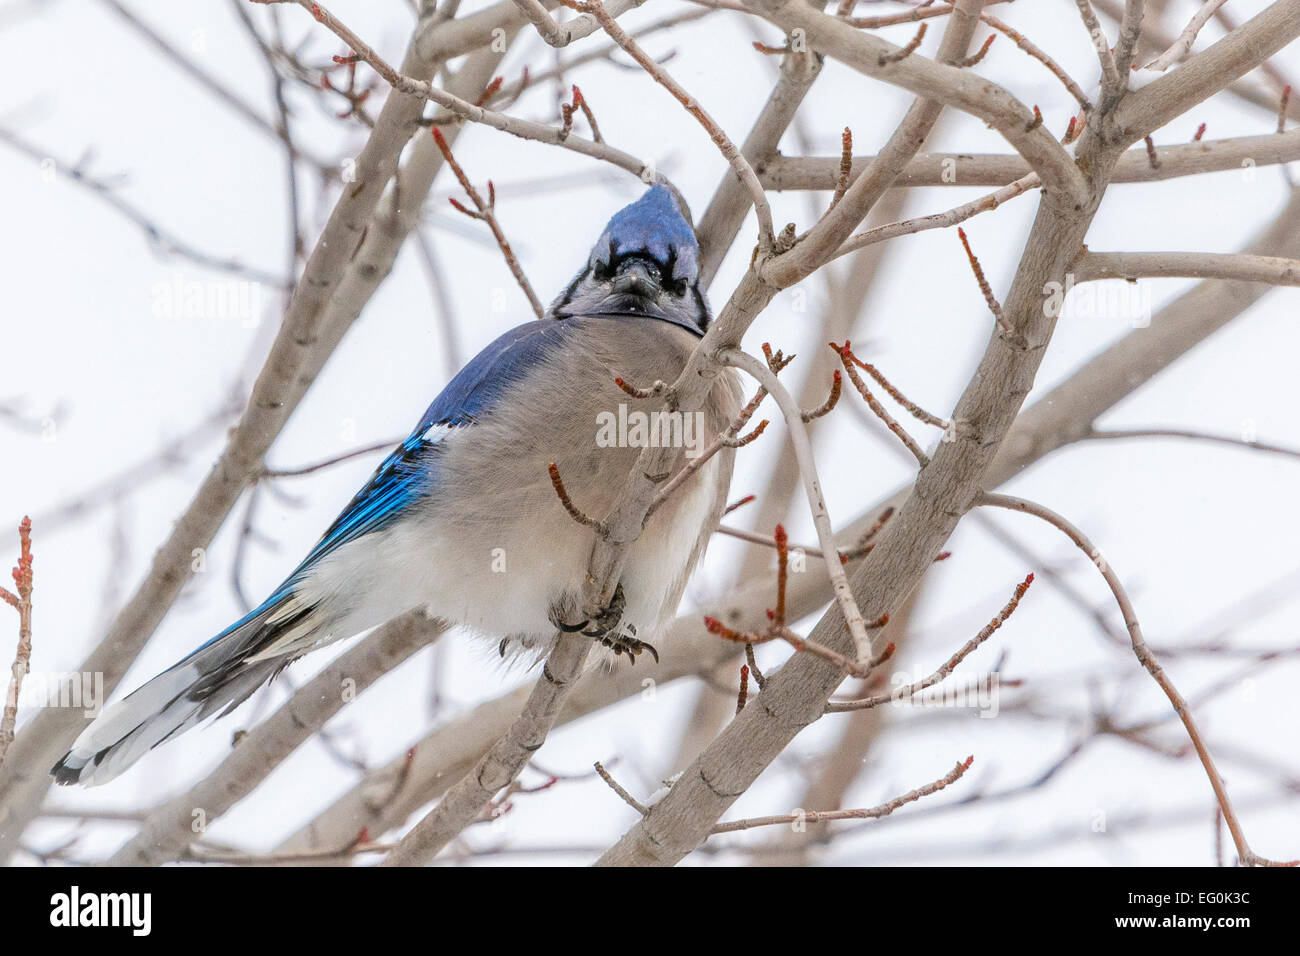 USA, Colorado, Blue Jay in tree Stock Photo